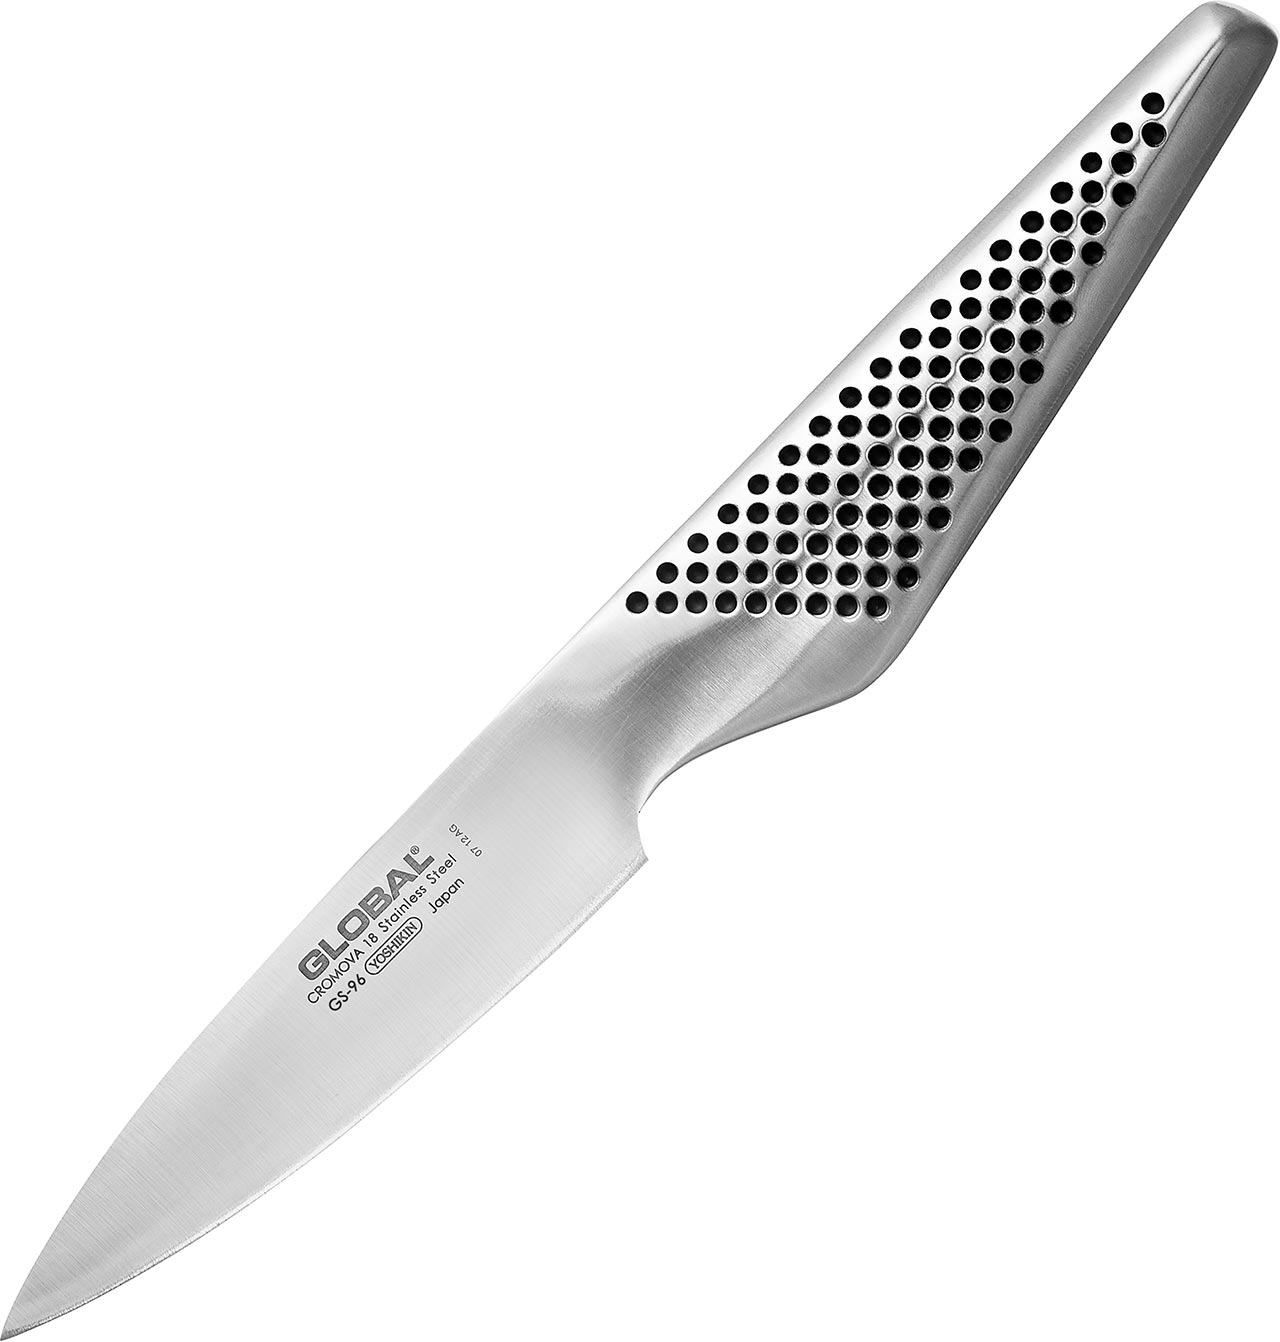 GS-96 Paring Knife 9cm